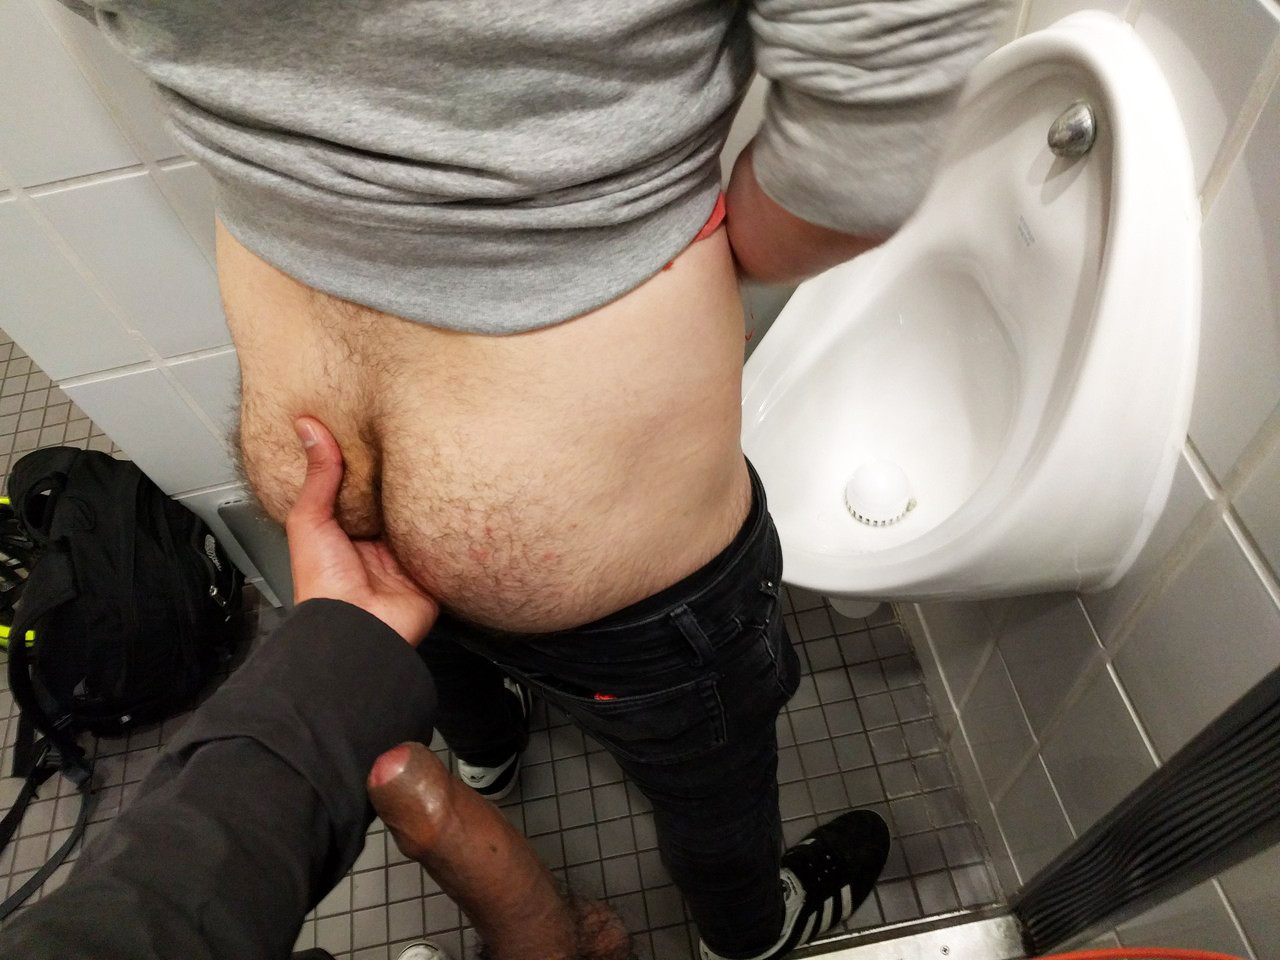 Want fuck public toilet